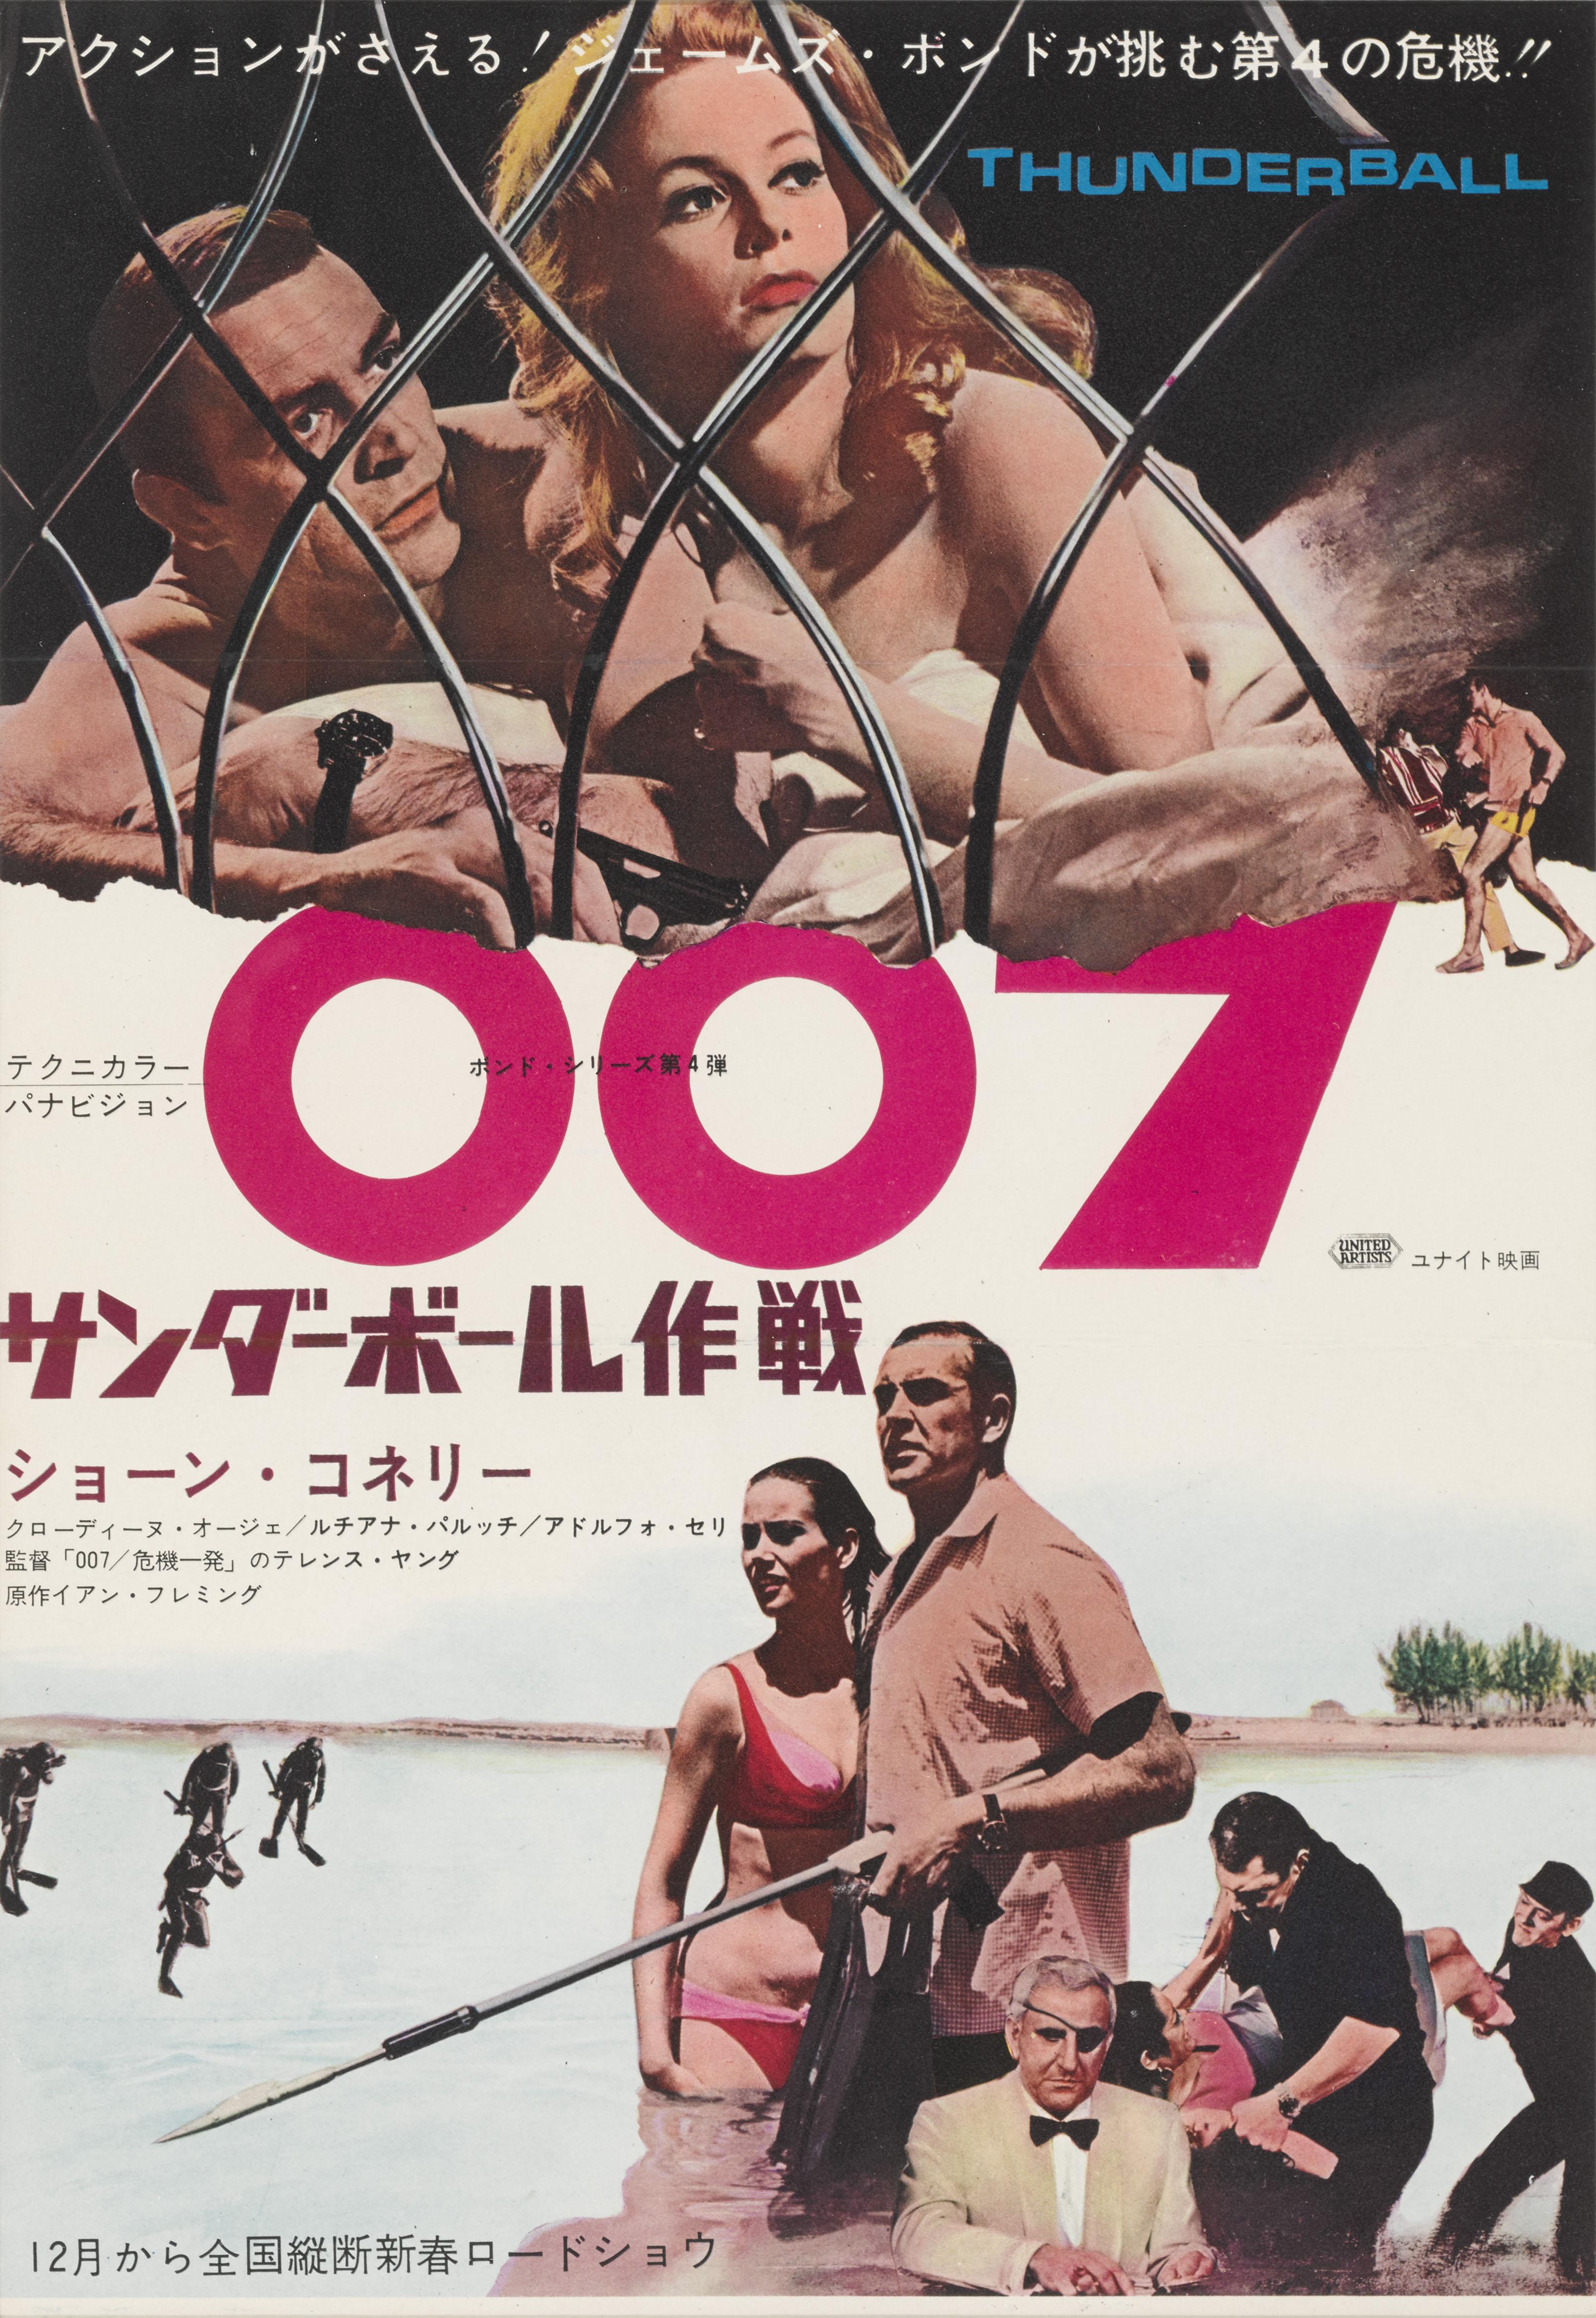 Original japanische Handelsanzeige aus der Erstveröffentlichung des Films im Jahr 1965.
Dies war der vierte Teil der James-Bond-Reihe, produziert von Eon Productions, mit Sean Connery in der Hauptrolle. Die Regie führte Terence Young, der bereits